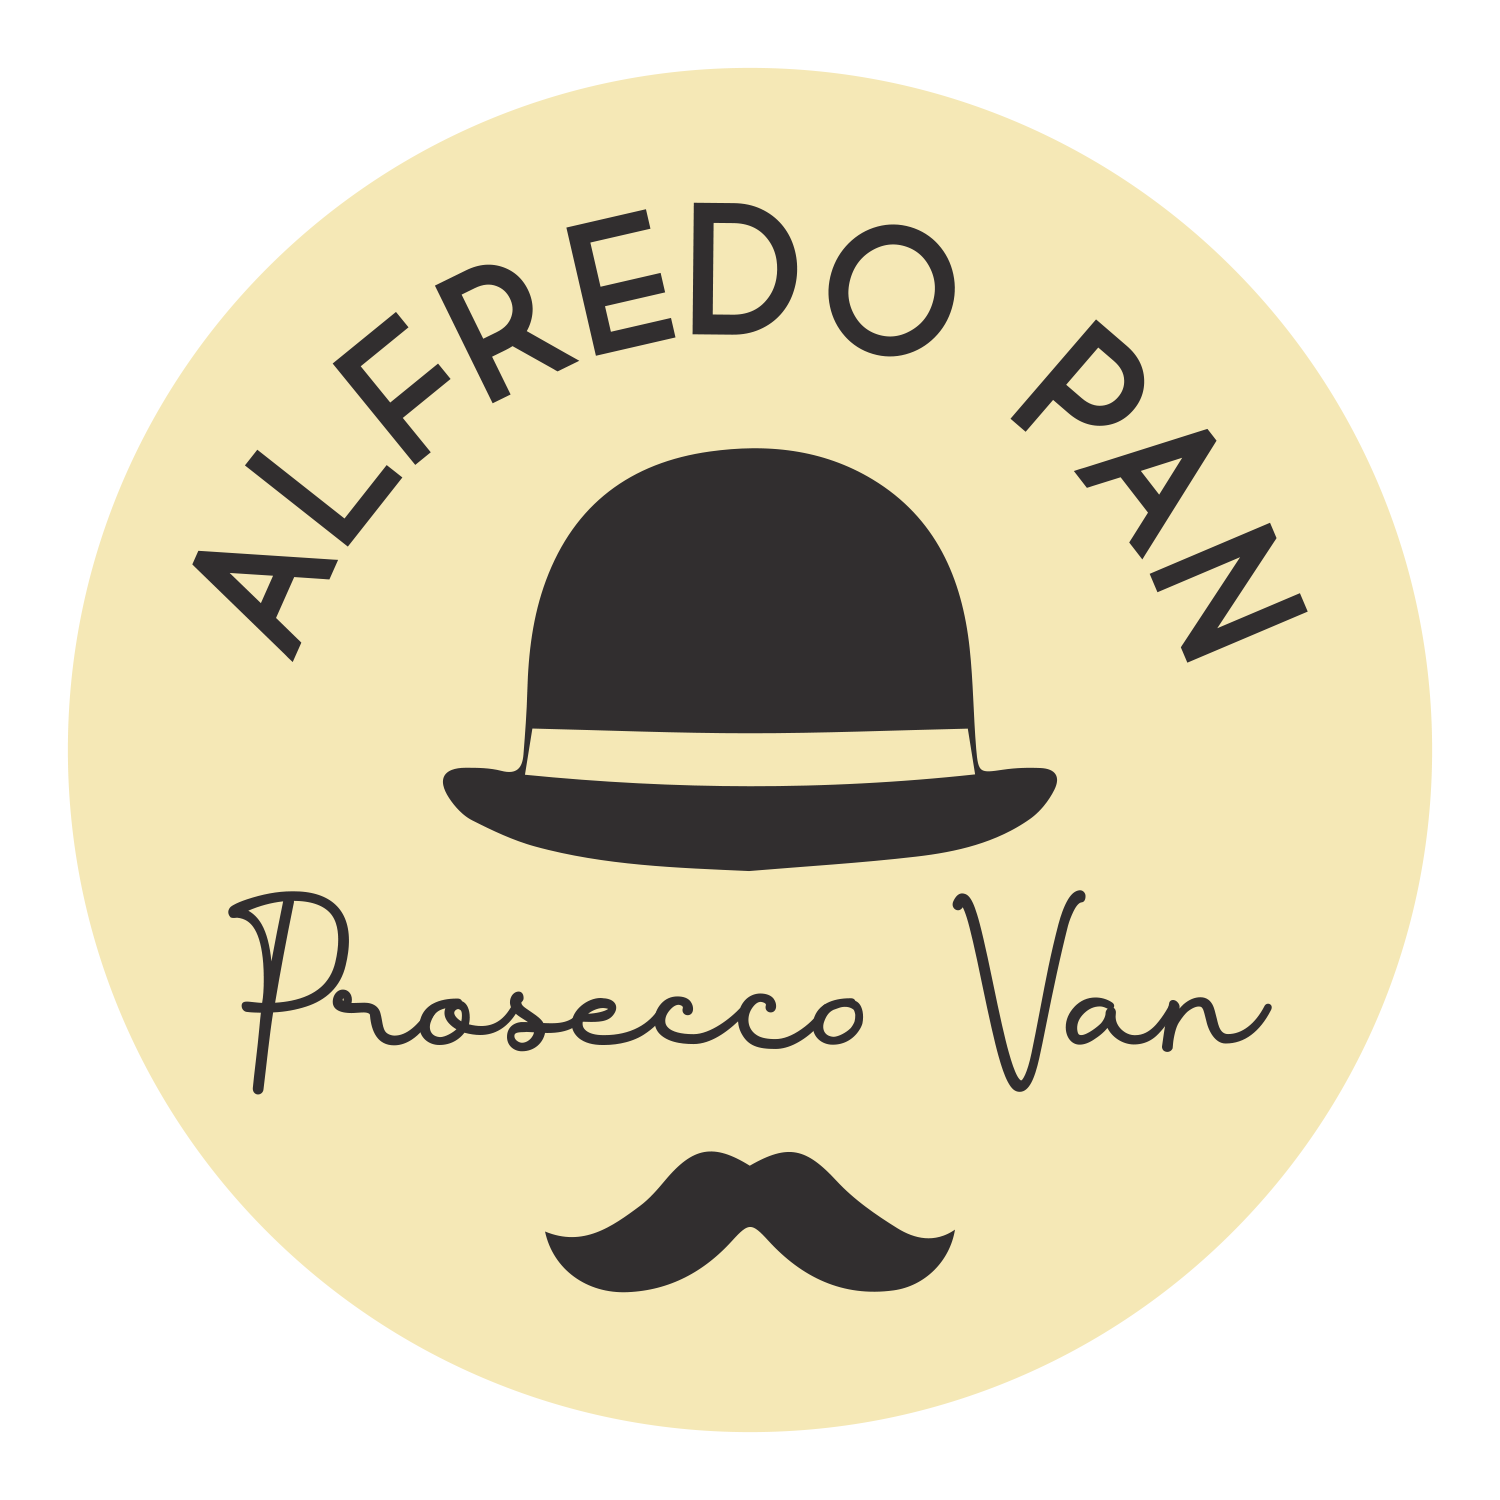 alfredo_pan_prosseco_van